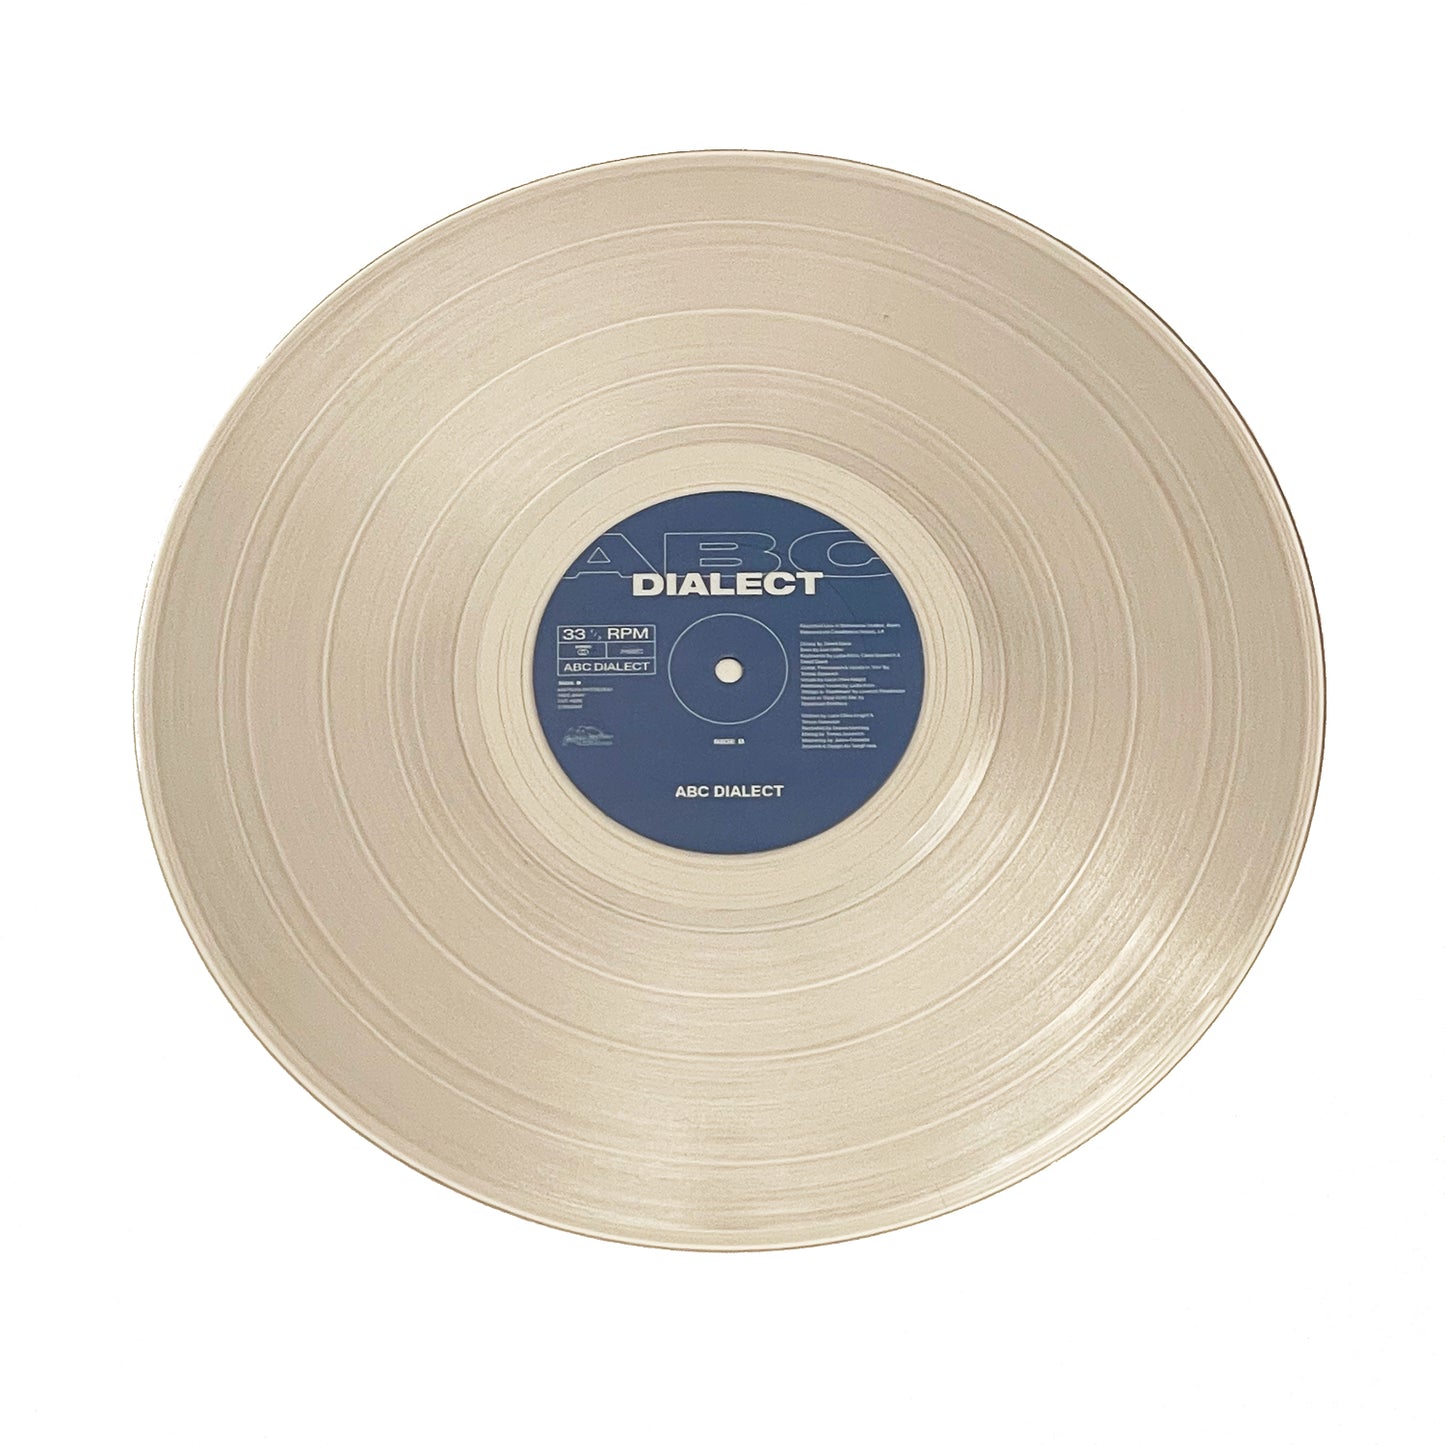 Abc Dialect — Abc Dialect Vinyl LP